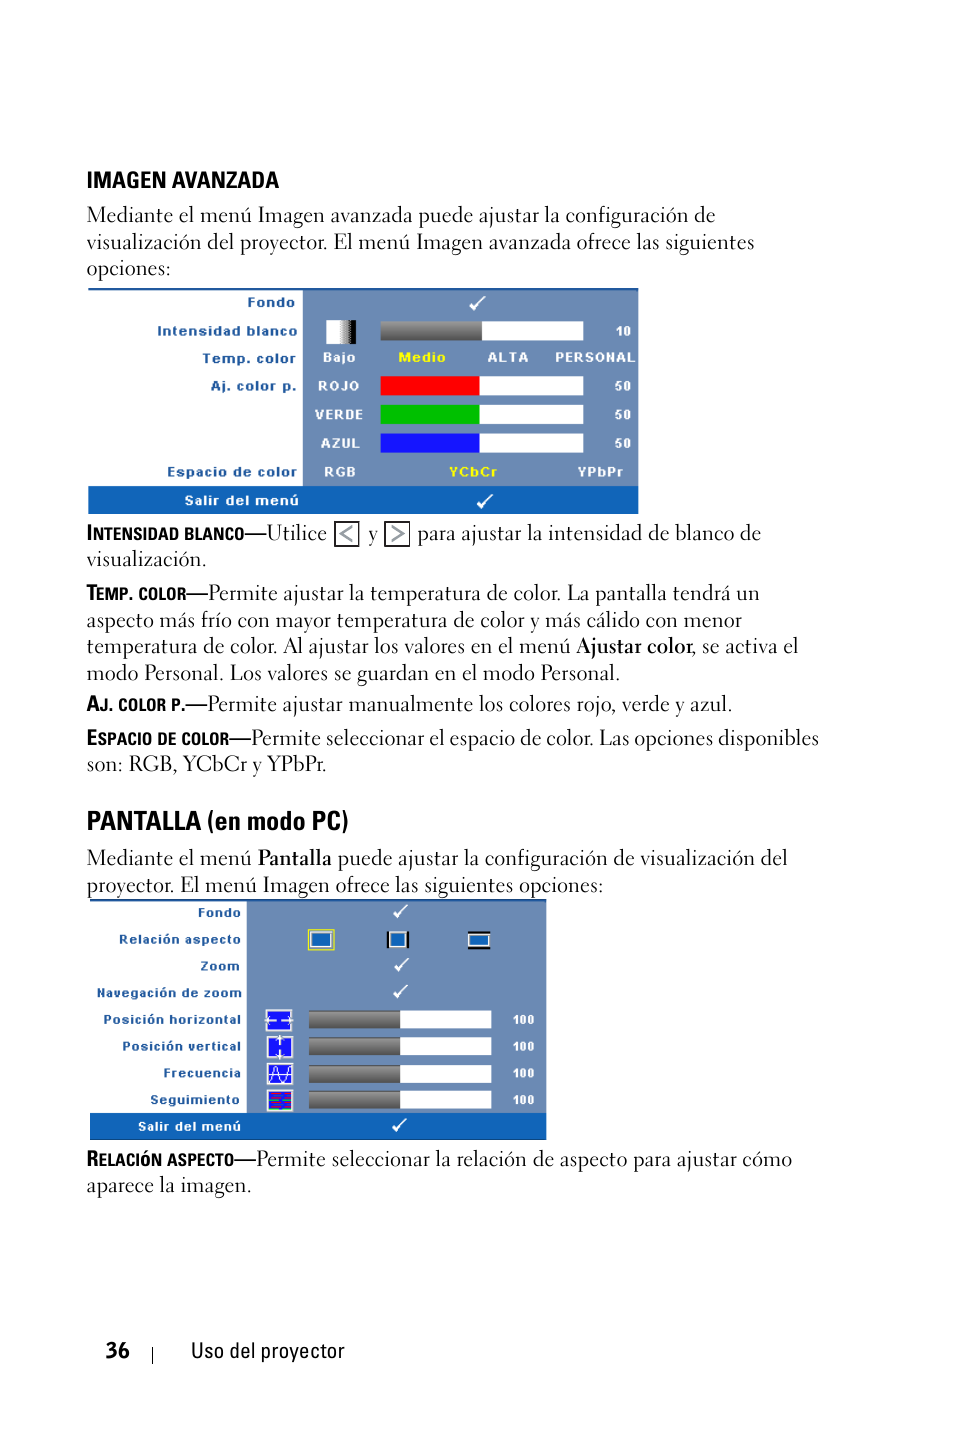 Imagen avanzada, Pantalla (en modo pc) | Dell S300 Projector Manual del usuario | Página 36 / 82